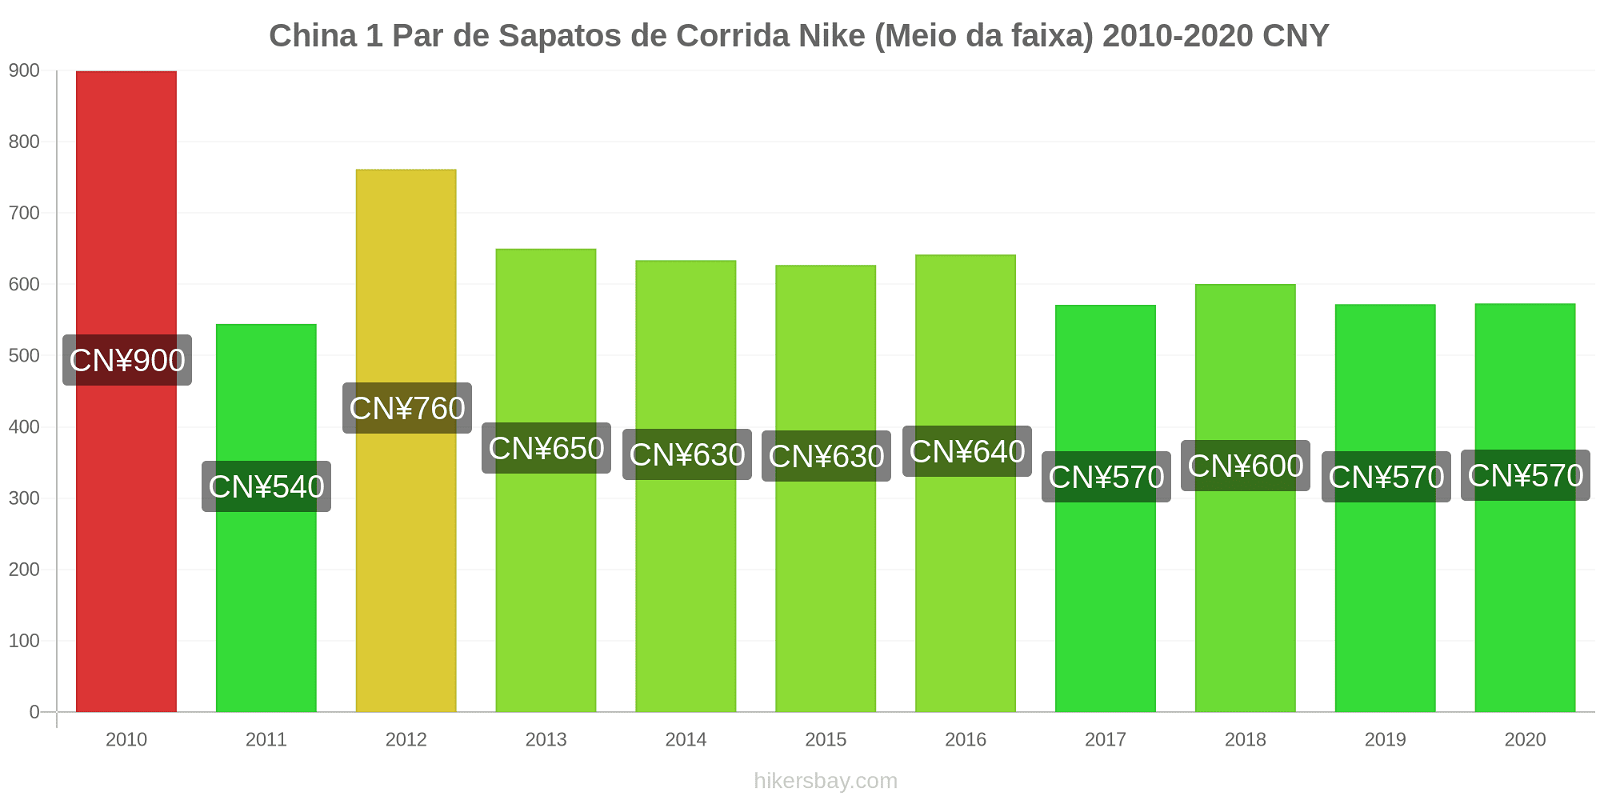 China variação de preço 1 par de tênis Nike (mid-range) hikersbay.com